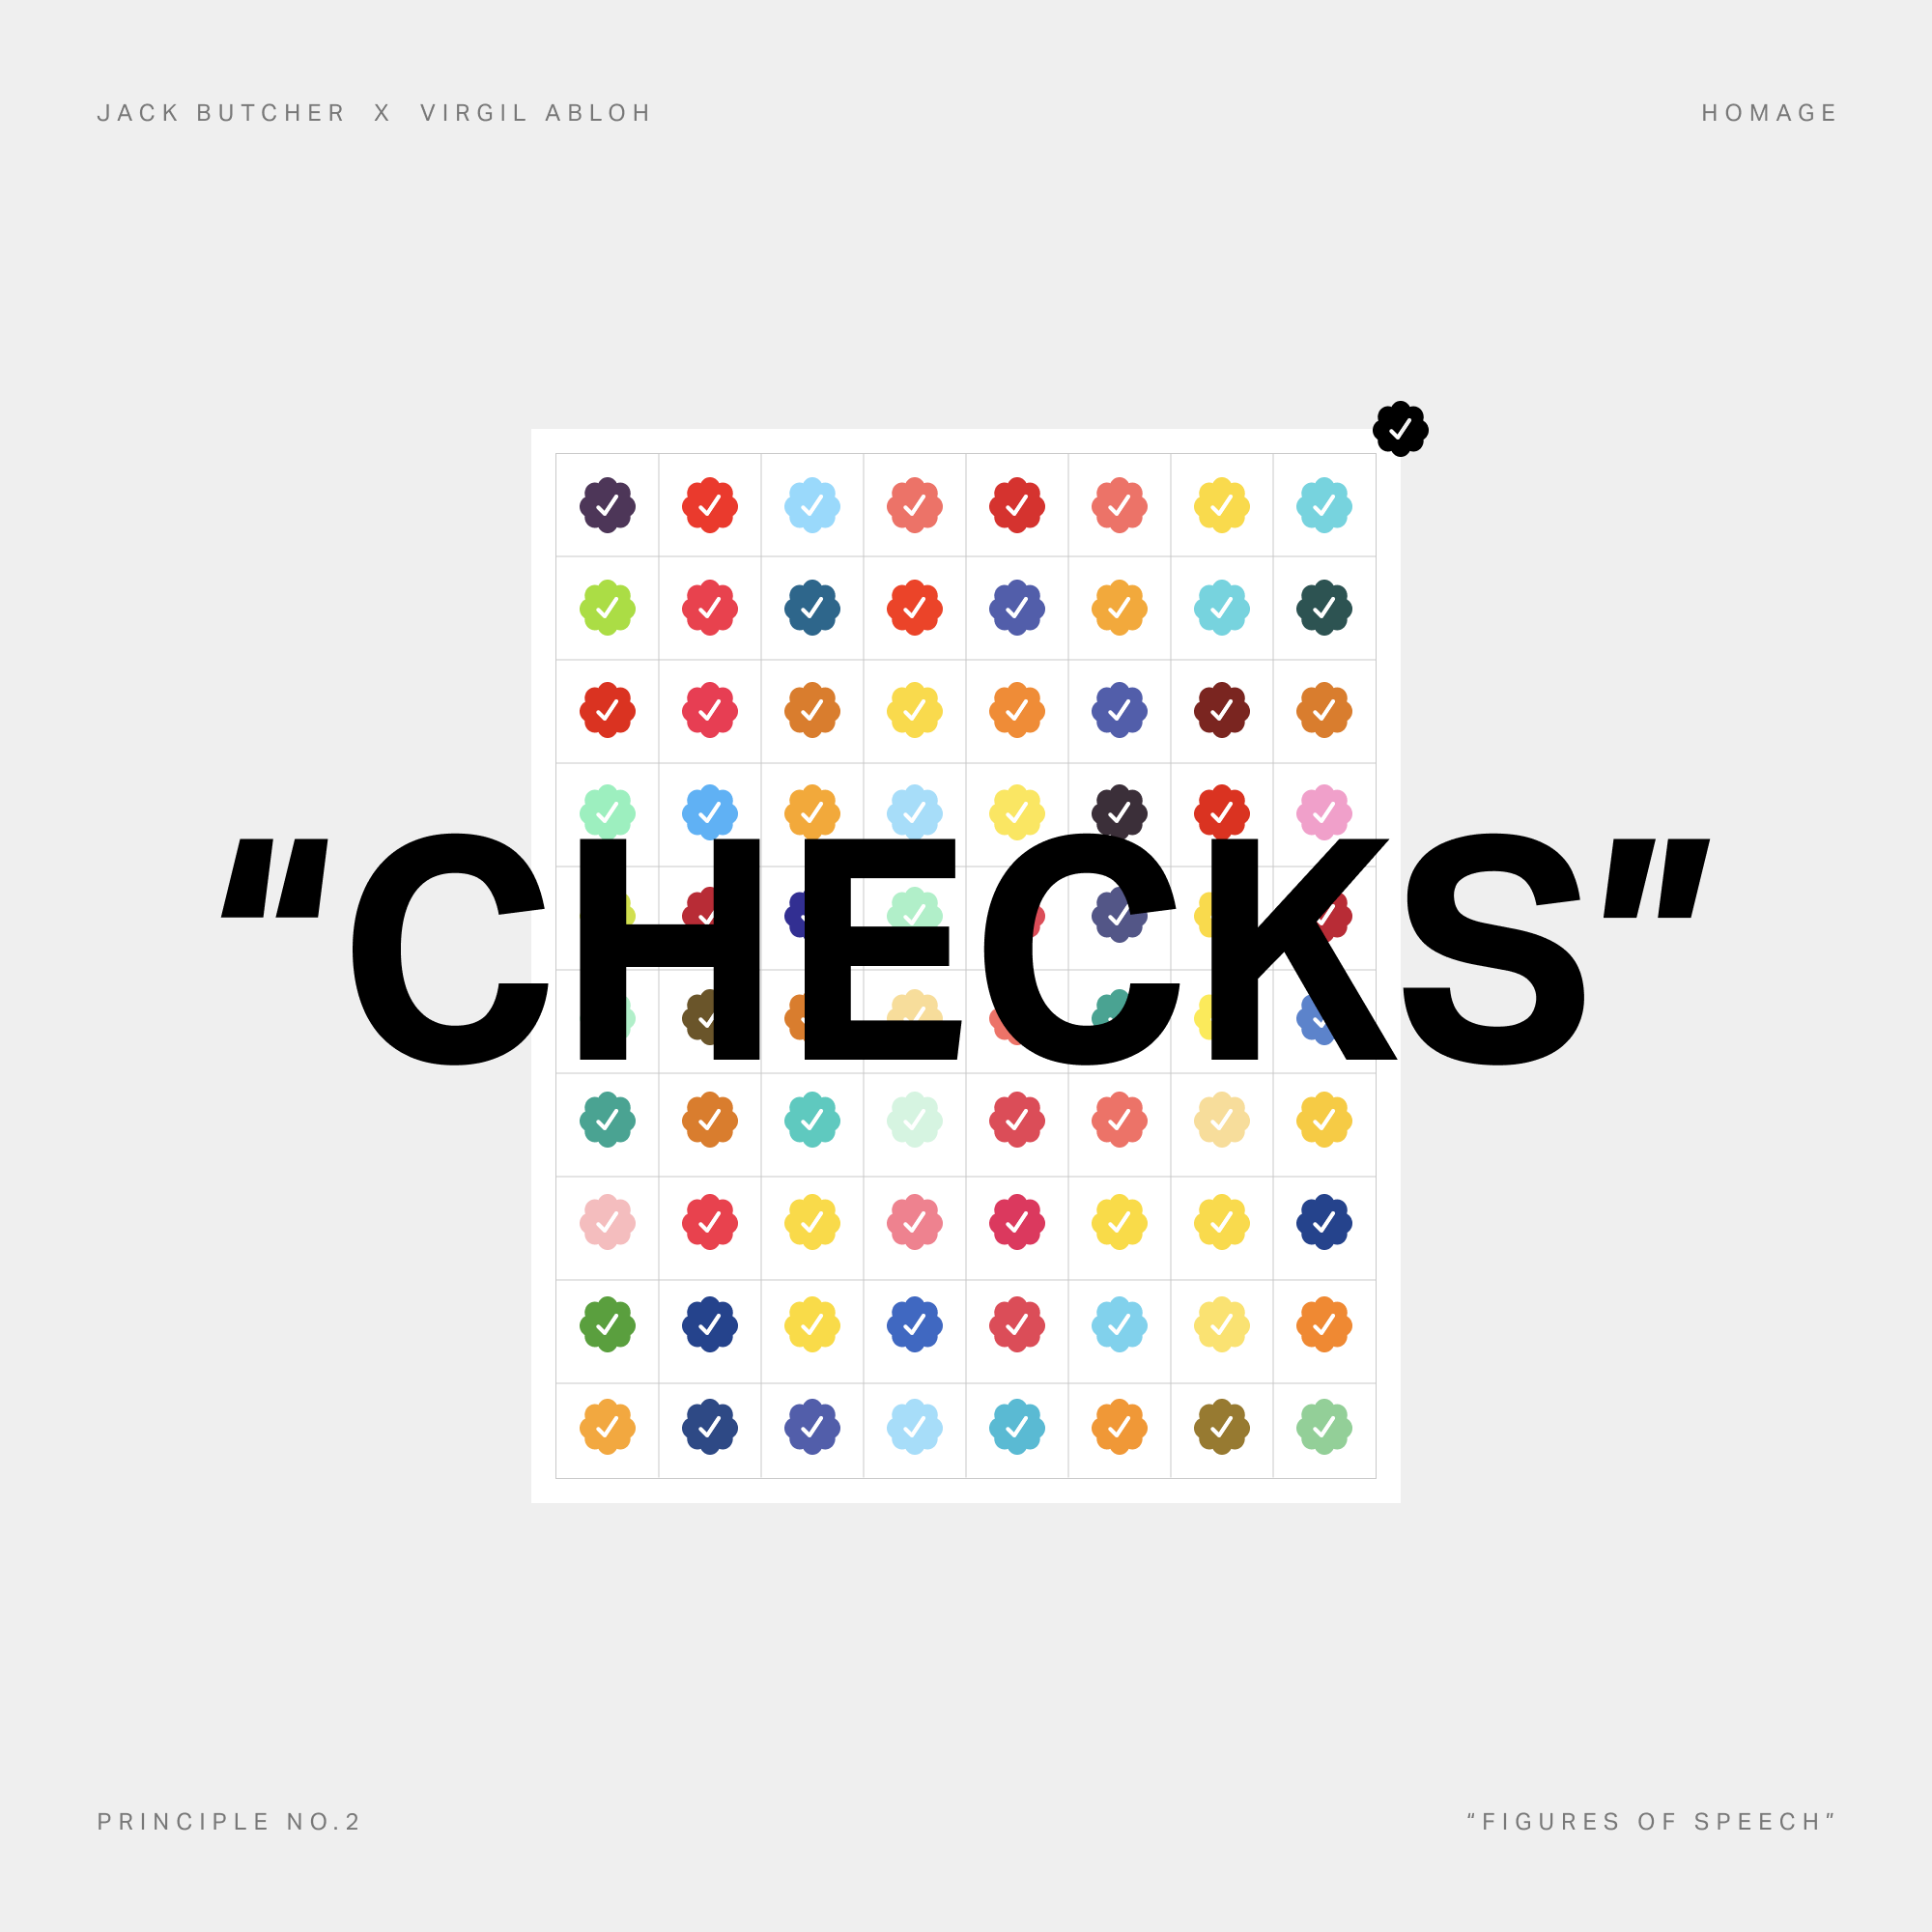 Checks inspired artwork